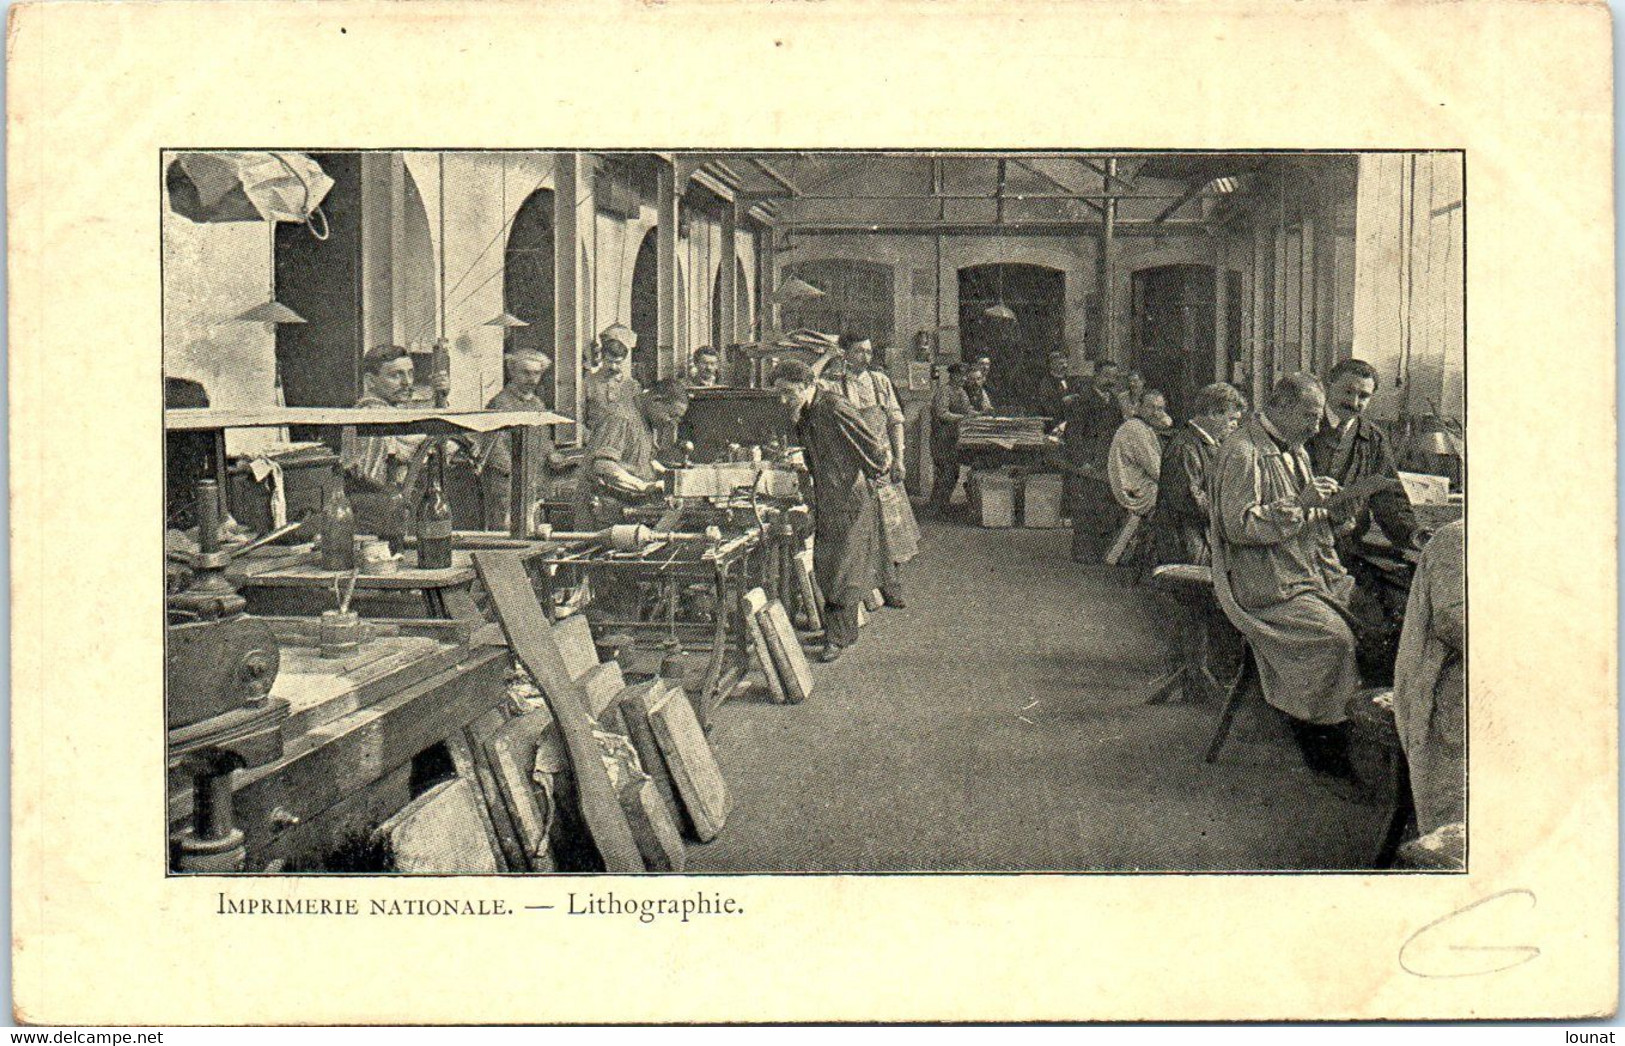 Métier - Imprimerie Nationale - Lithographie - Paris - Industry